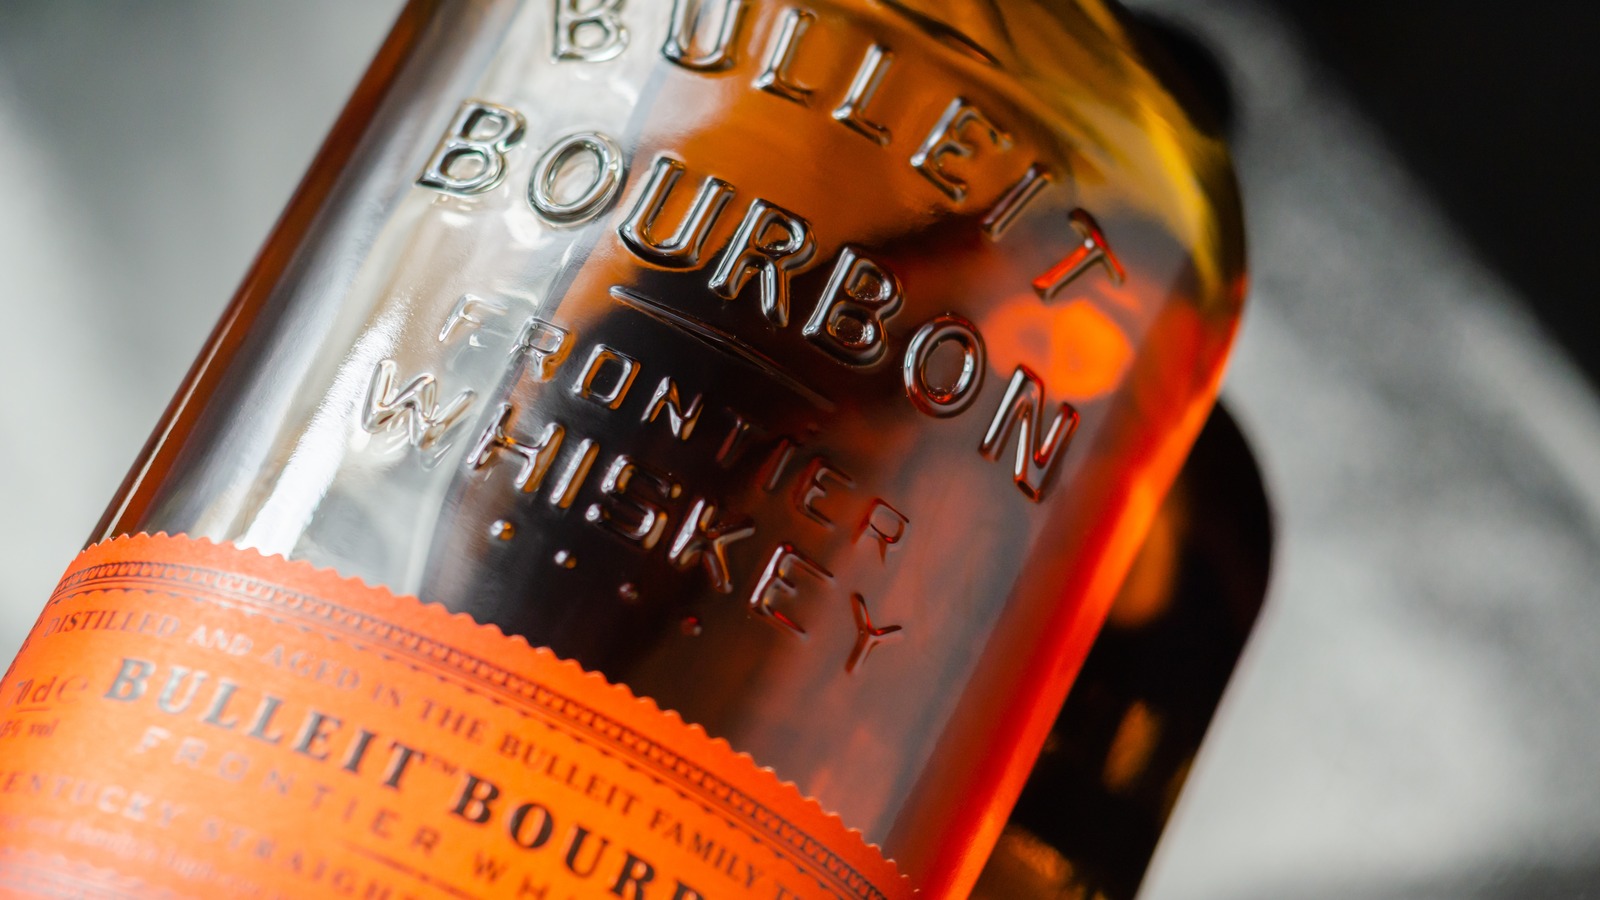 Bulleit Bourbon (40%)